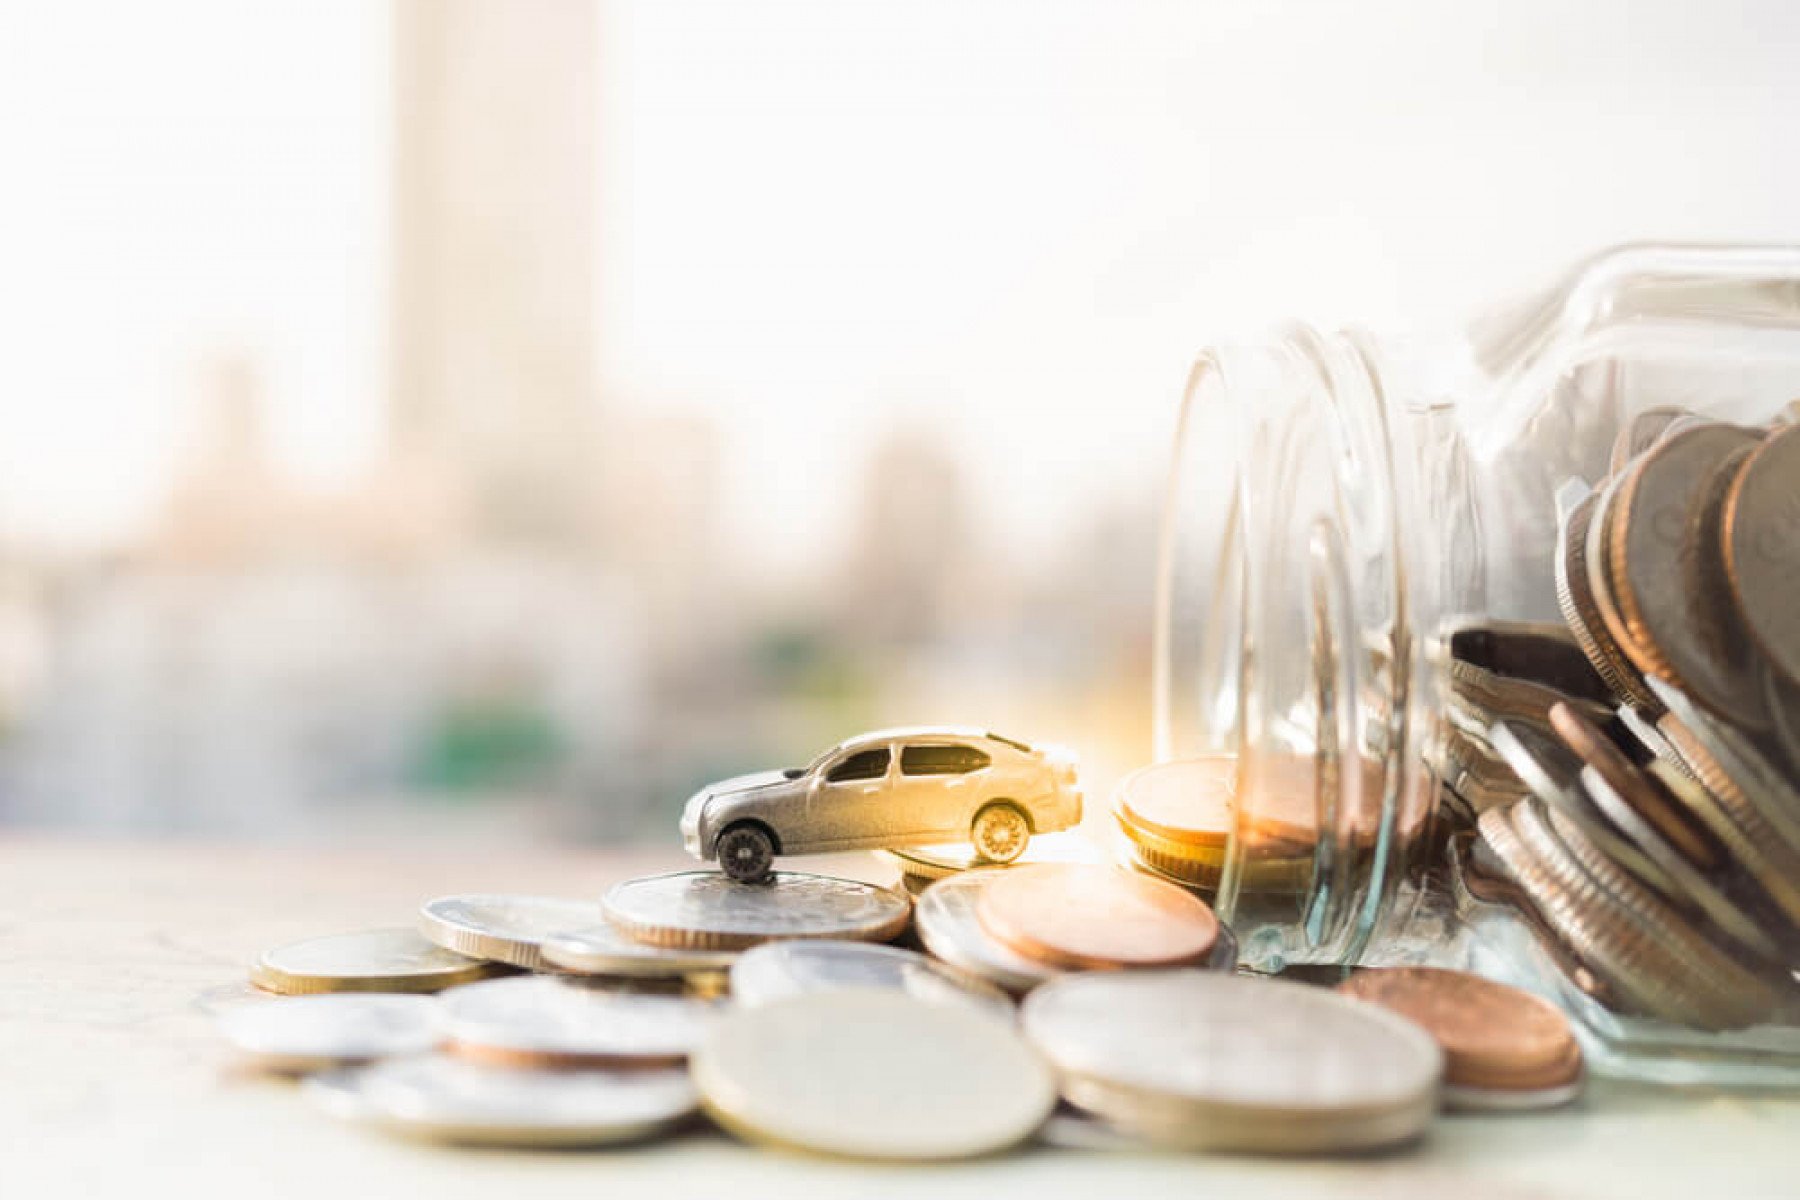 En glasburk ligger på ett bord med mynt ligger uthällda på ett bord. Ut ur glasburken kommer en leksaksbil